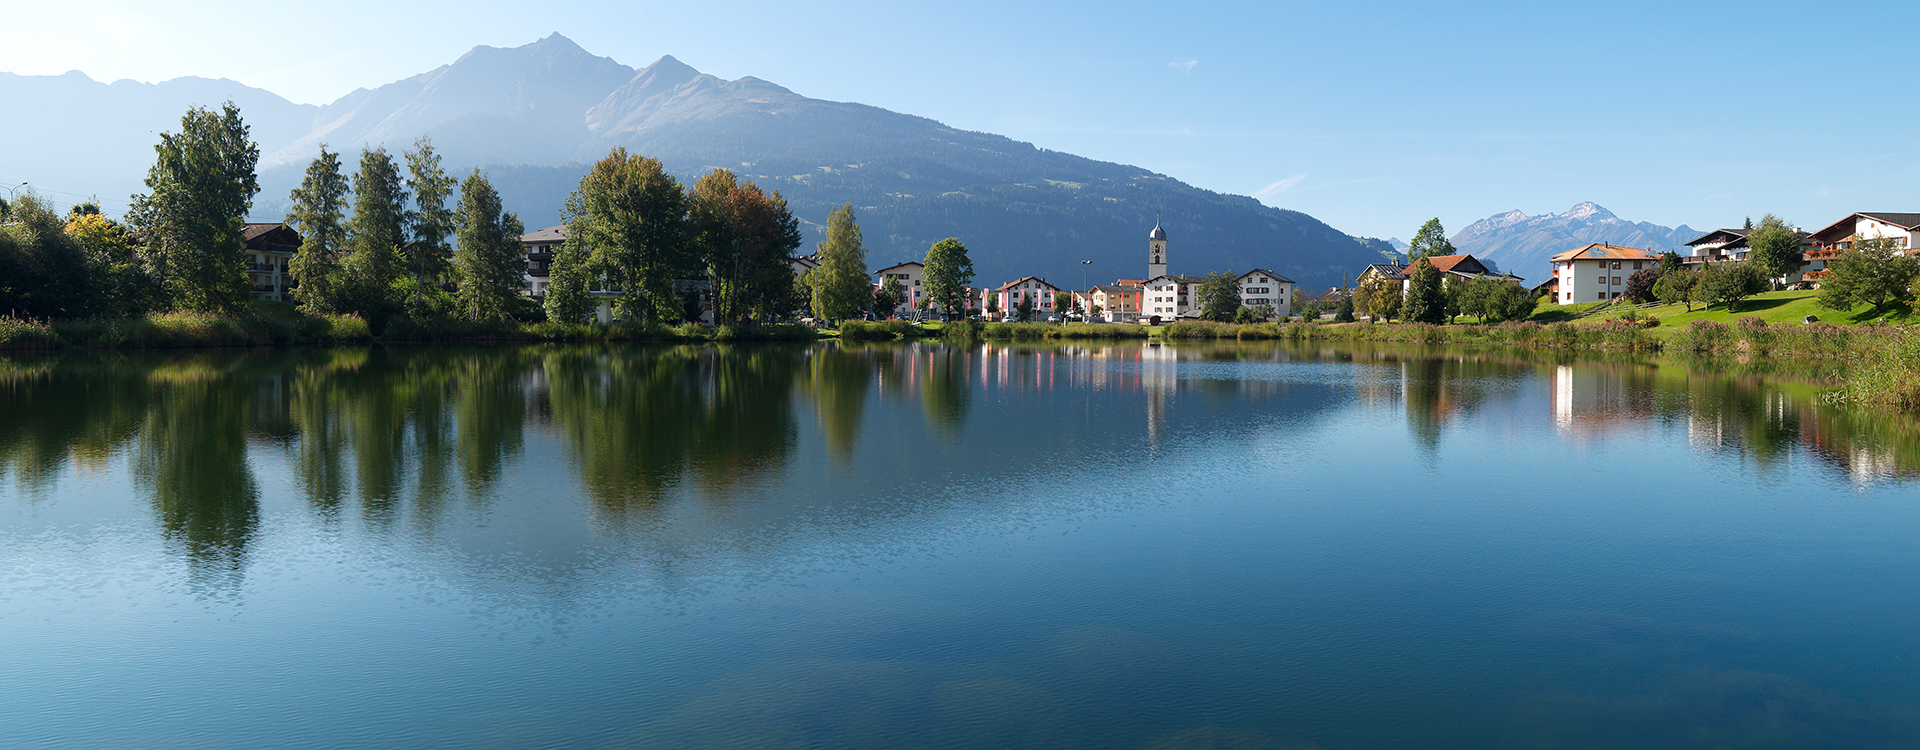 Baden in unseren Seen und Bergseen in Flims, Schweiz.